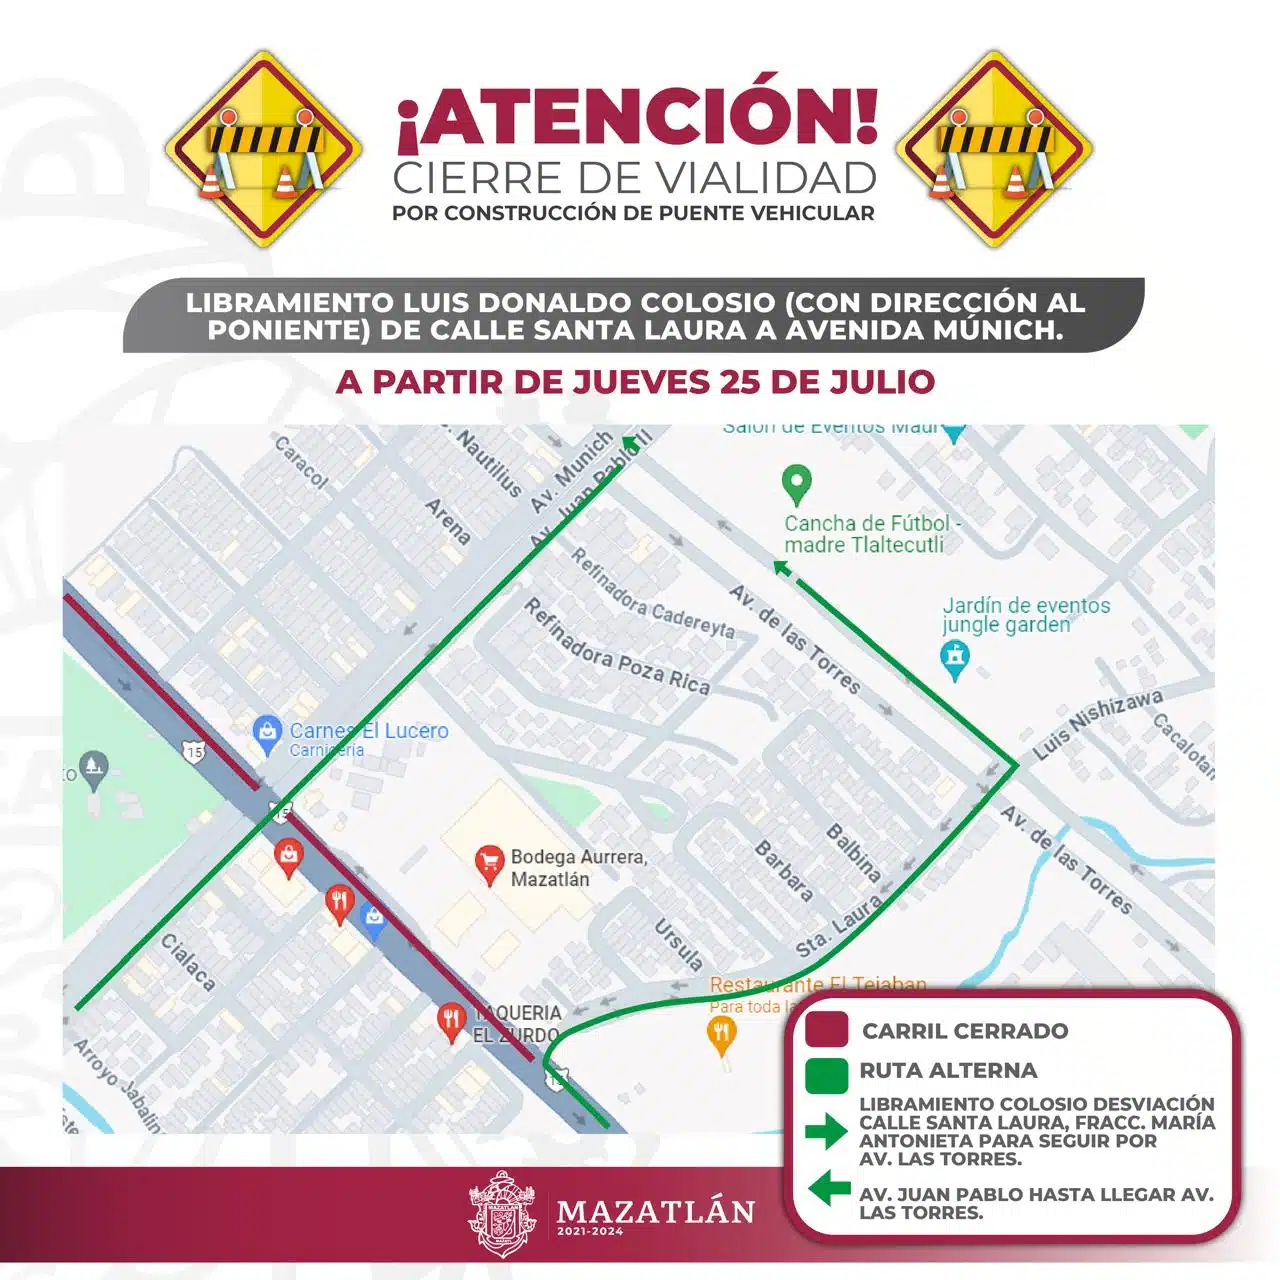 Imagen que muestra cierre de calle en Mazatlán